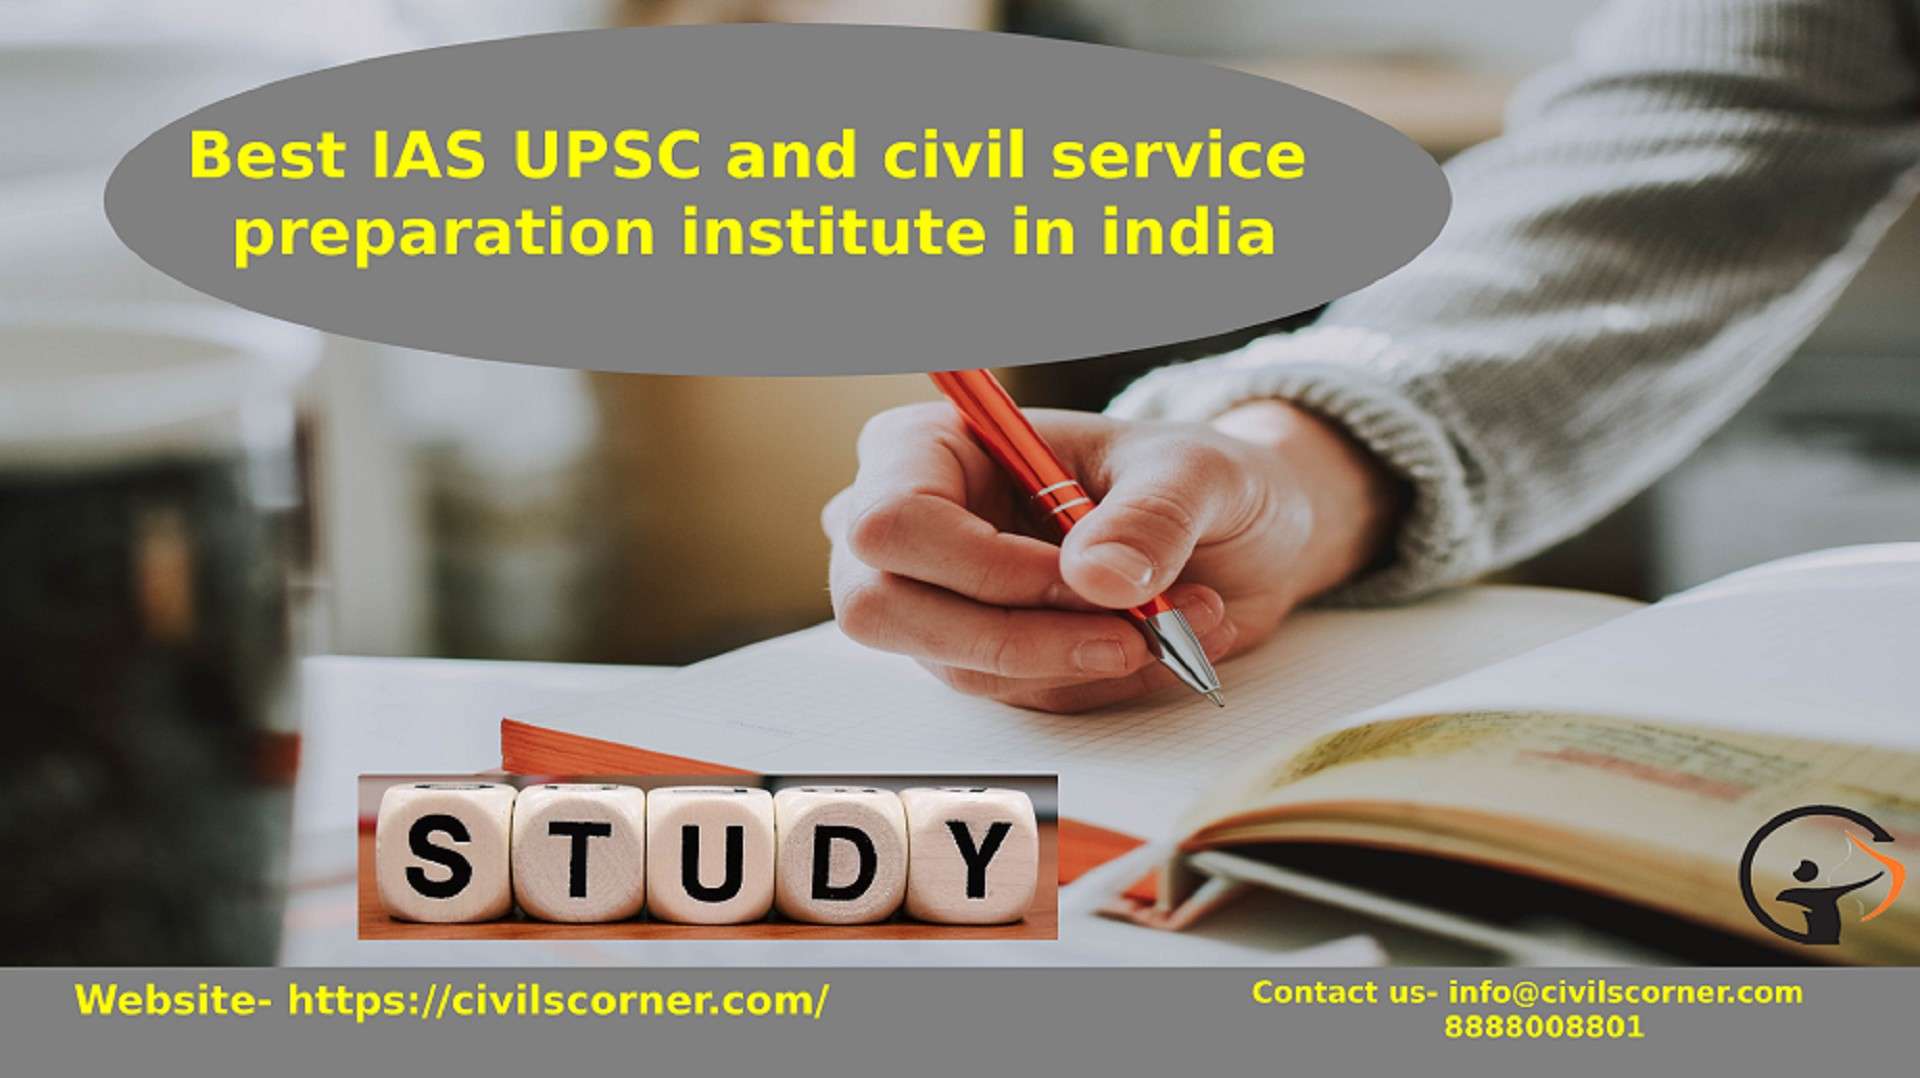 Best IAS UPSC and civil service preparation institute in india